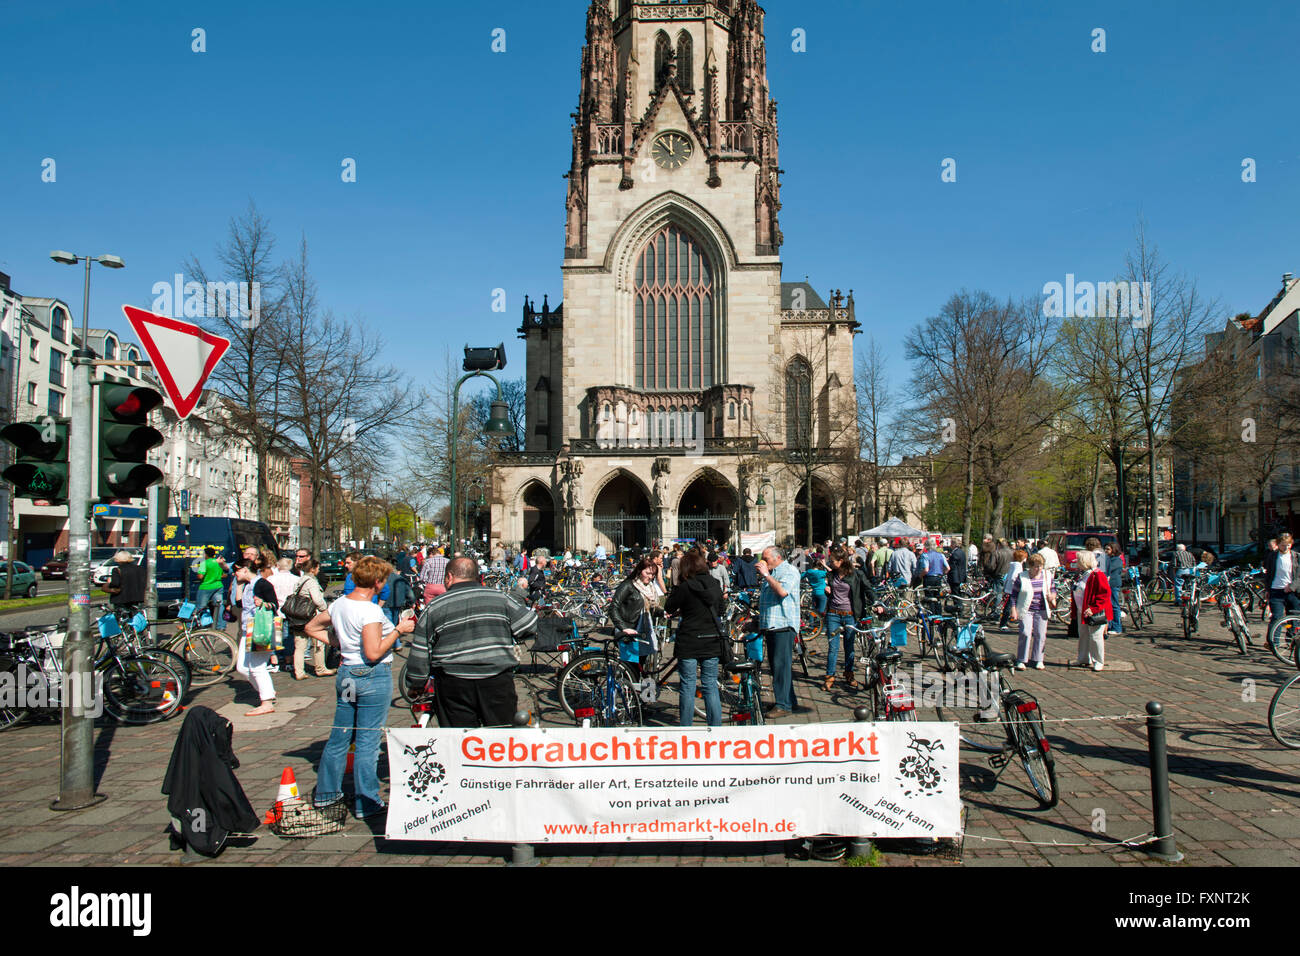 Deutschland, Kˆln, Gebrauchtfahrradmarkt an der Agneskirche Stock Photo